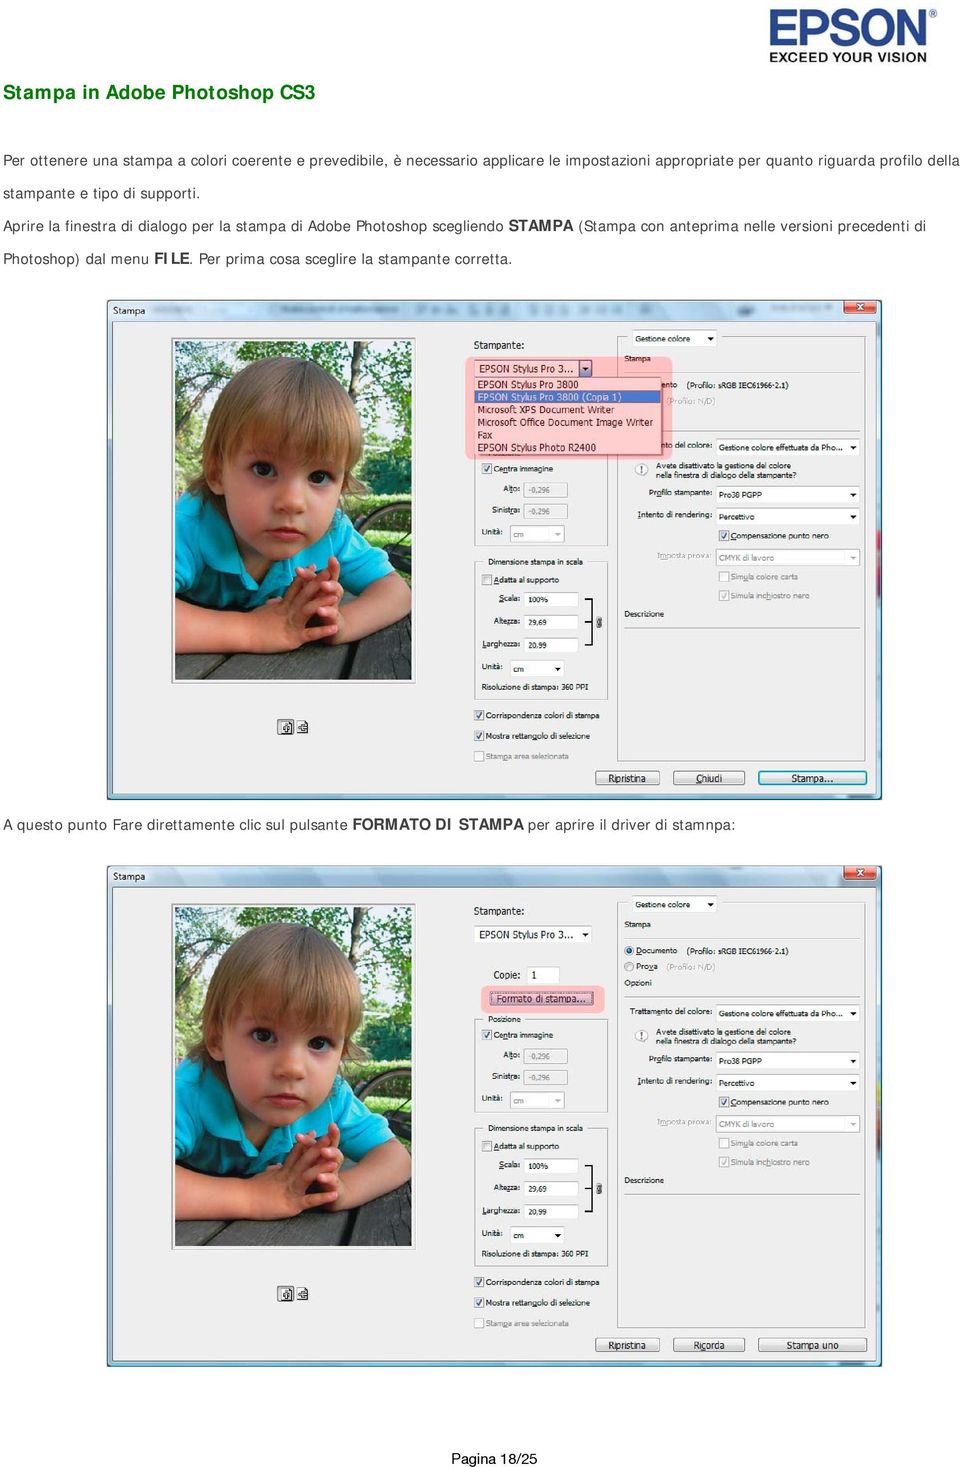 Aprire la finestra di dialogo per la stampa di Adobe Photoshop scegliendo STAMPA (Stampa con anteprima nelle versioni precedenti